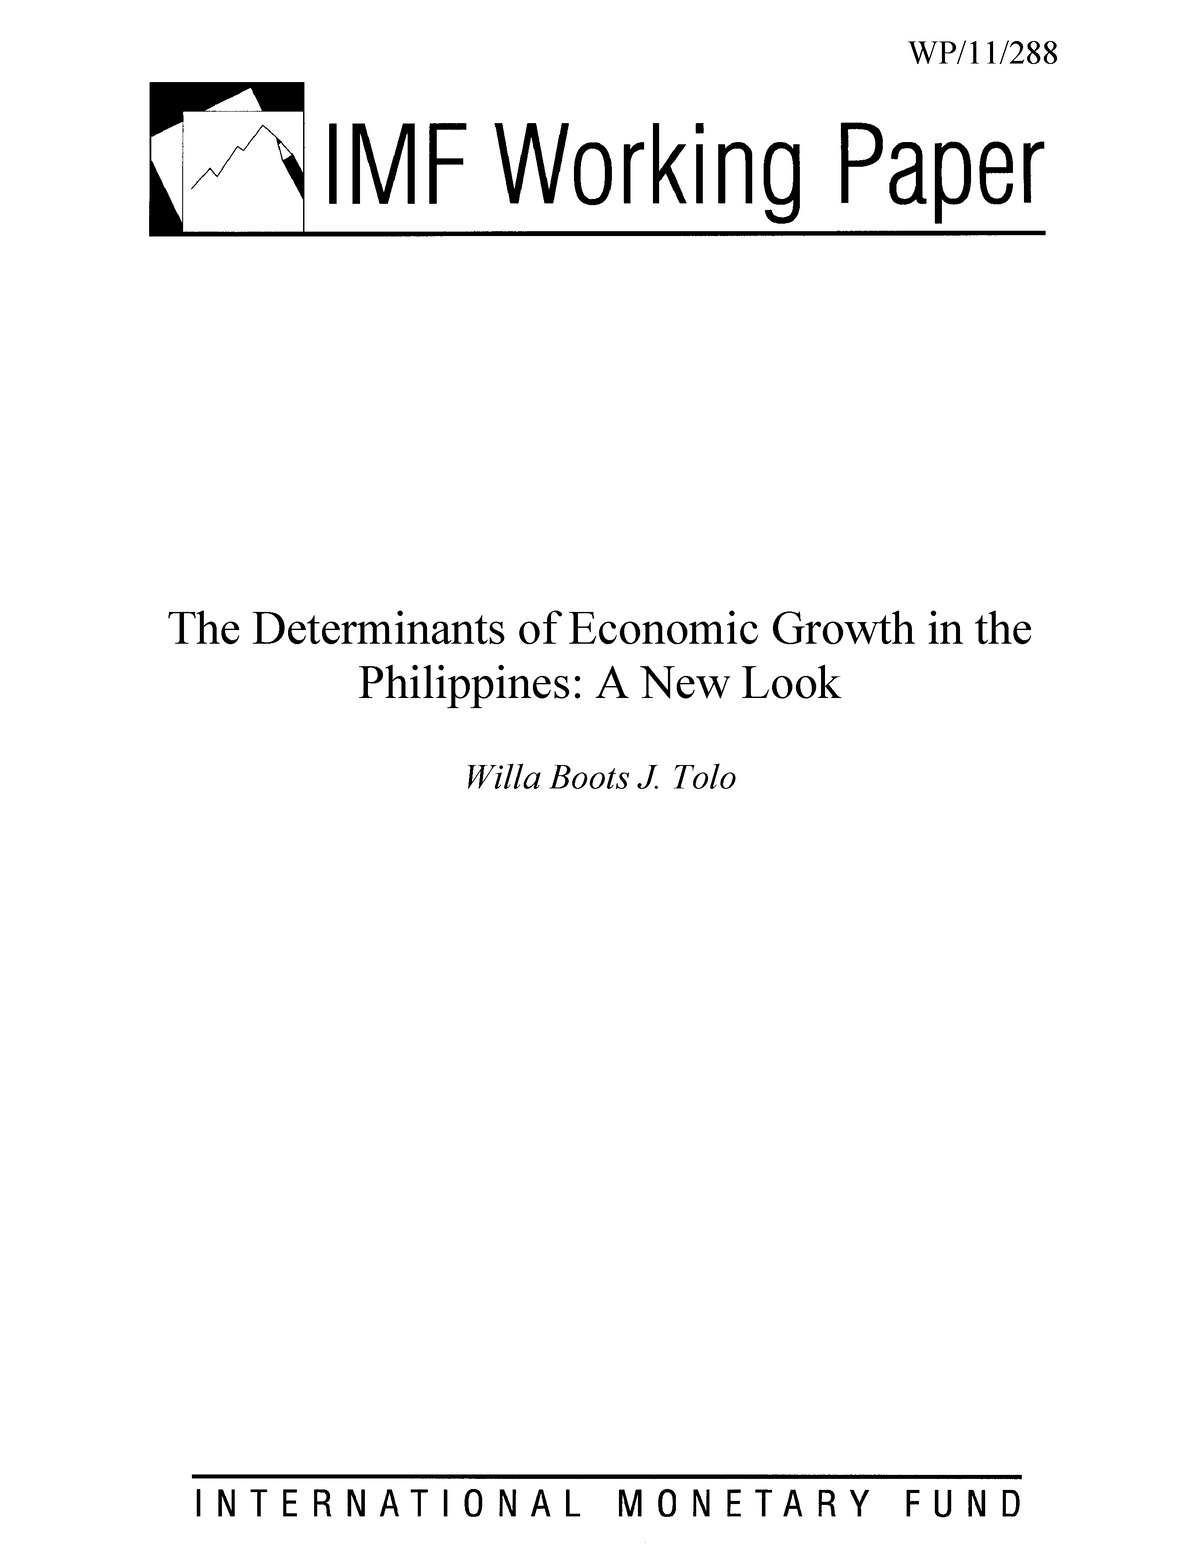 Determinants of Philippine Economic growth - The Determinants of ...